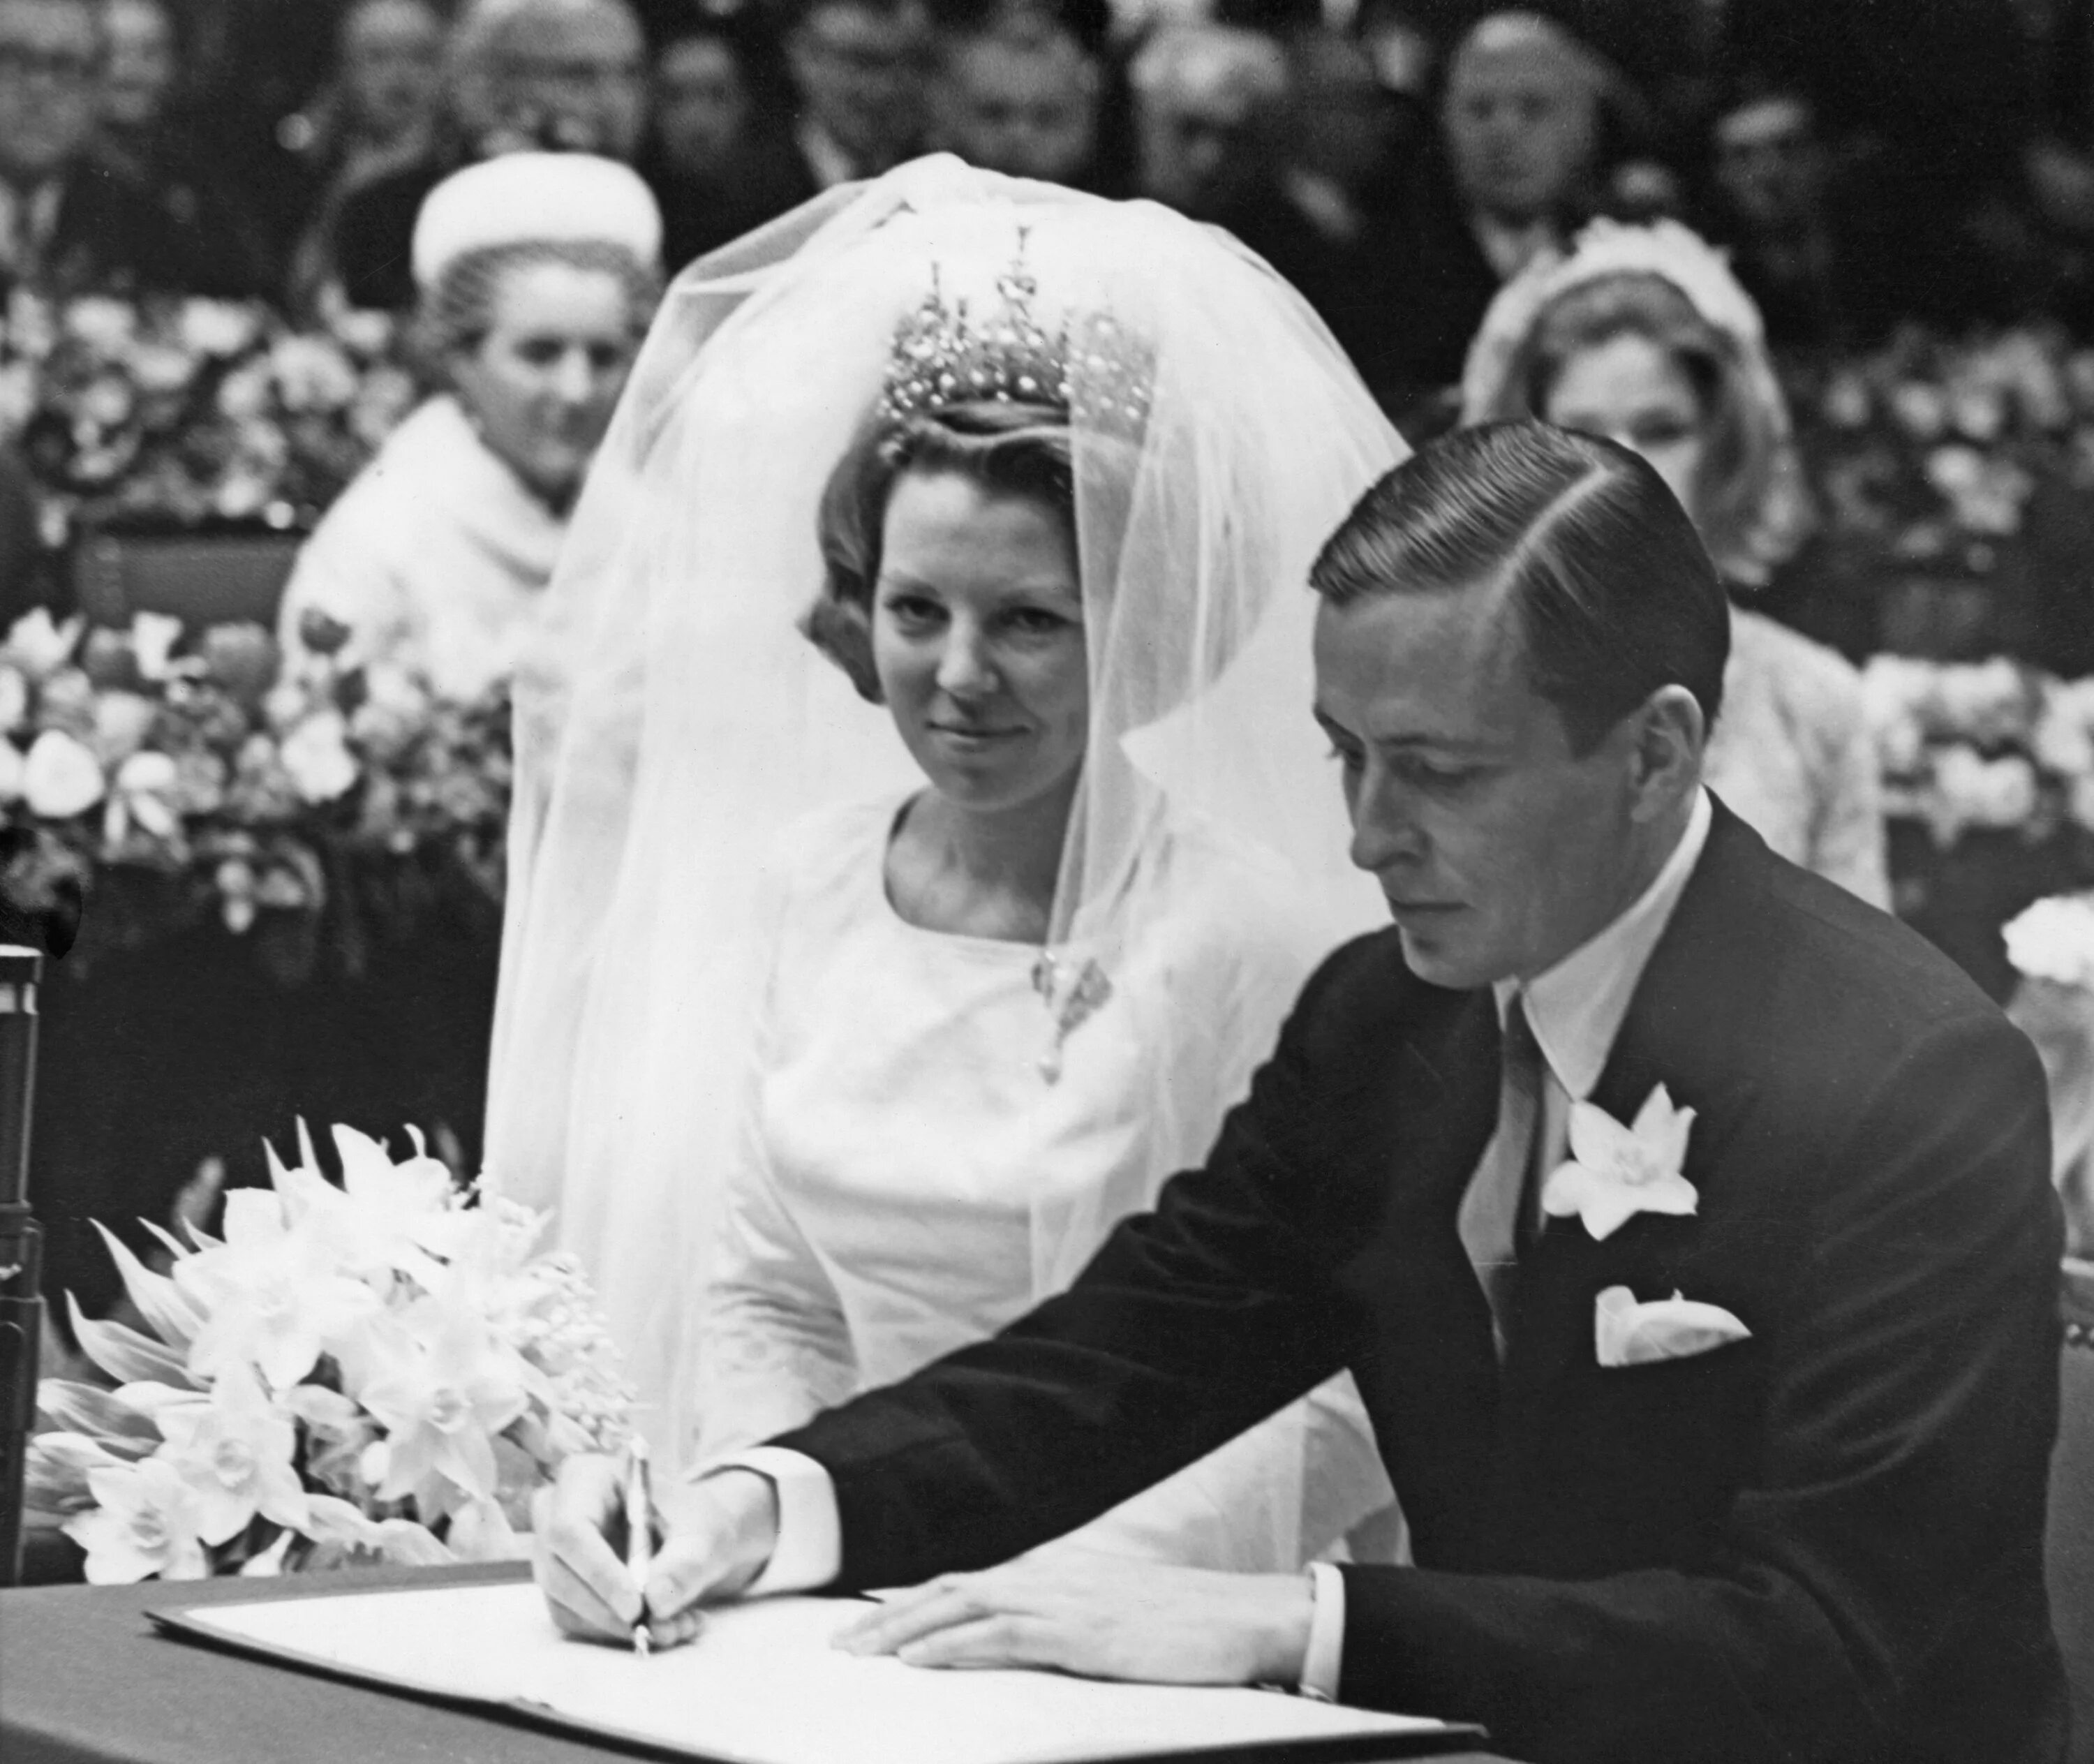 Свадьба королевы Беатрикс и Клауса Нидерланды. Королева Беатрикс свадьба. Королева Беатрикс Нидерланды свадьба. Наследник престола принцесса маргрете